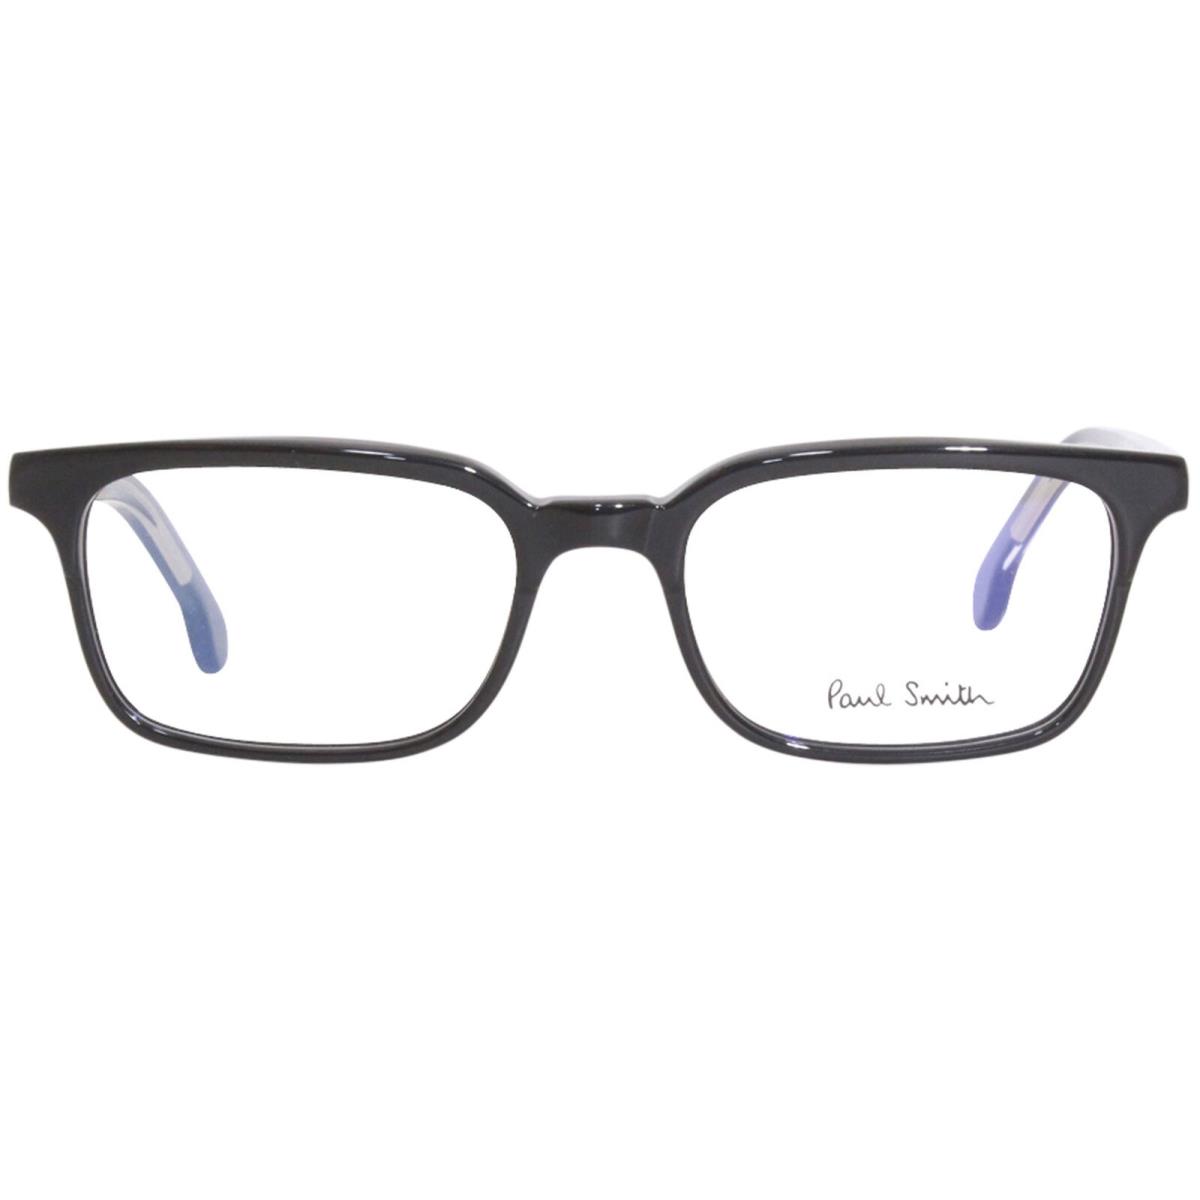 Paul Smith Adelaide-V1 PSOP002V1 001 Eyeglasses Black Ink/crystal Optical Frame